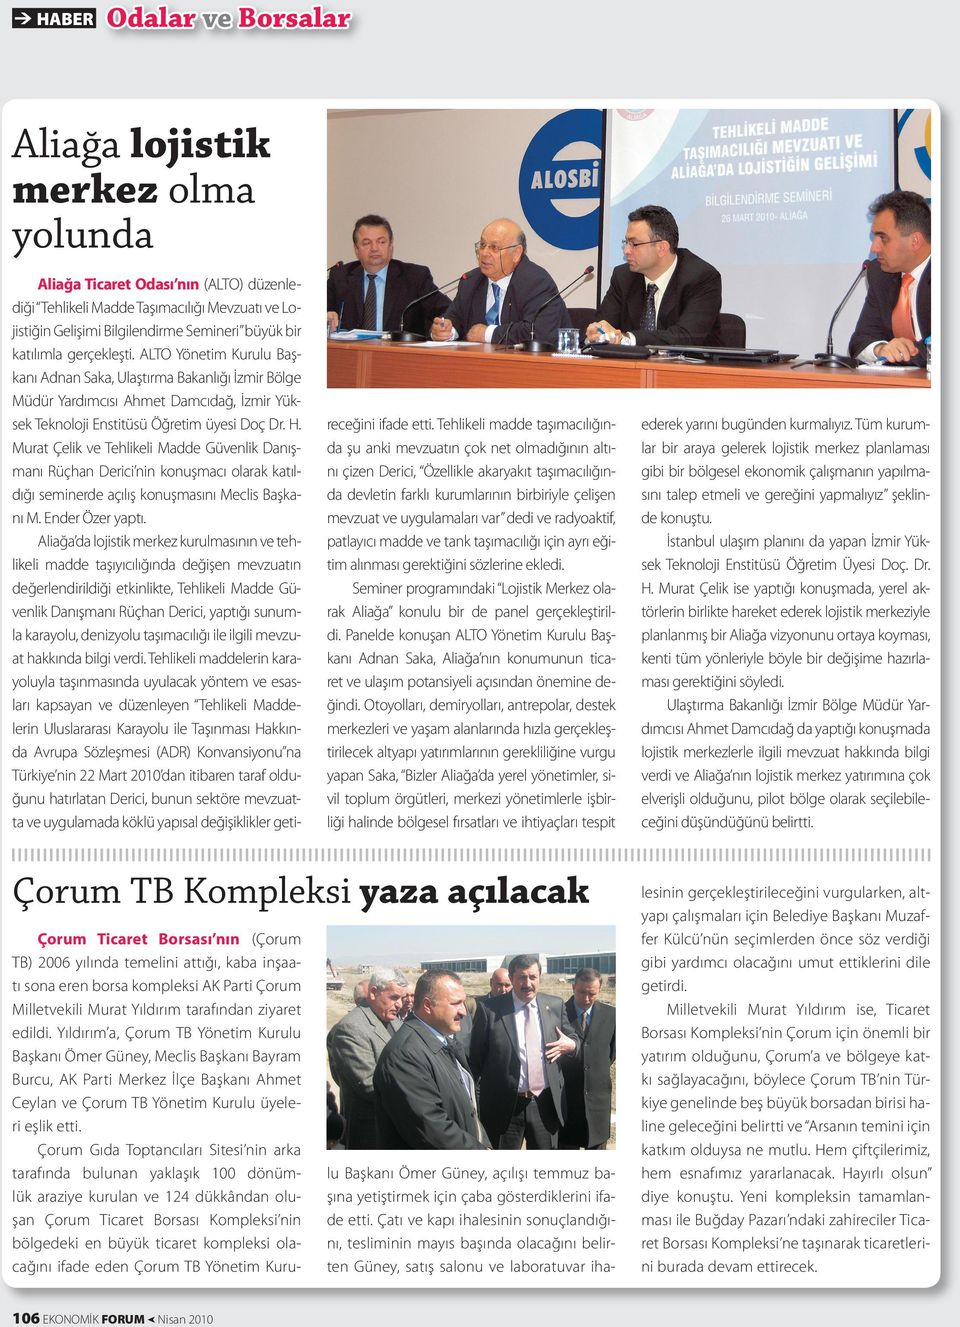 Murat Çelik ve Tehlikeli Madde Güvenlik Danışmanı Rüçhan Derici nin konuşmacı olarak katıldığı seminerde açılış konuşmasını Meclis Başkanı M. Ender Özer yaptı.